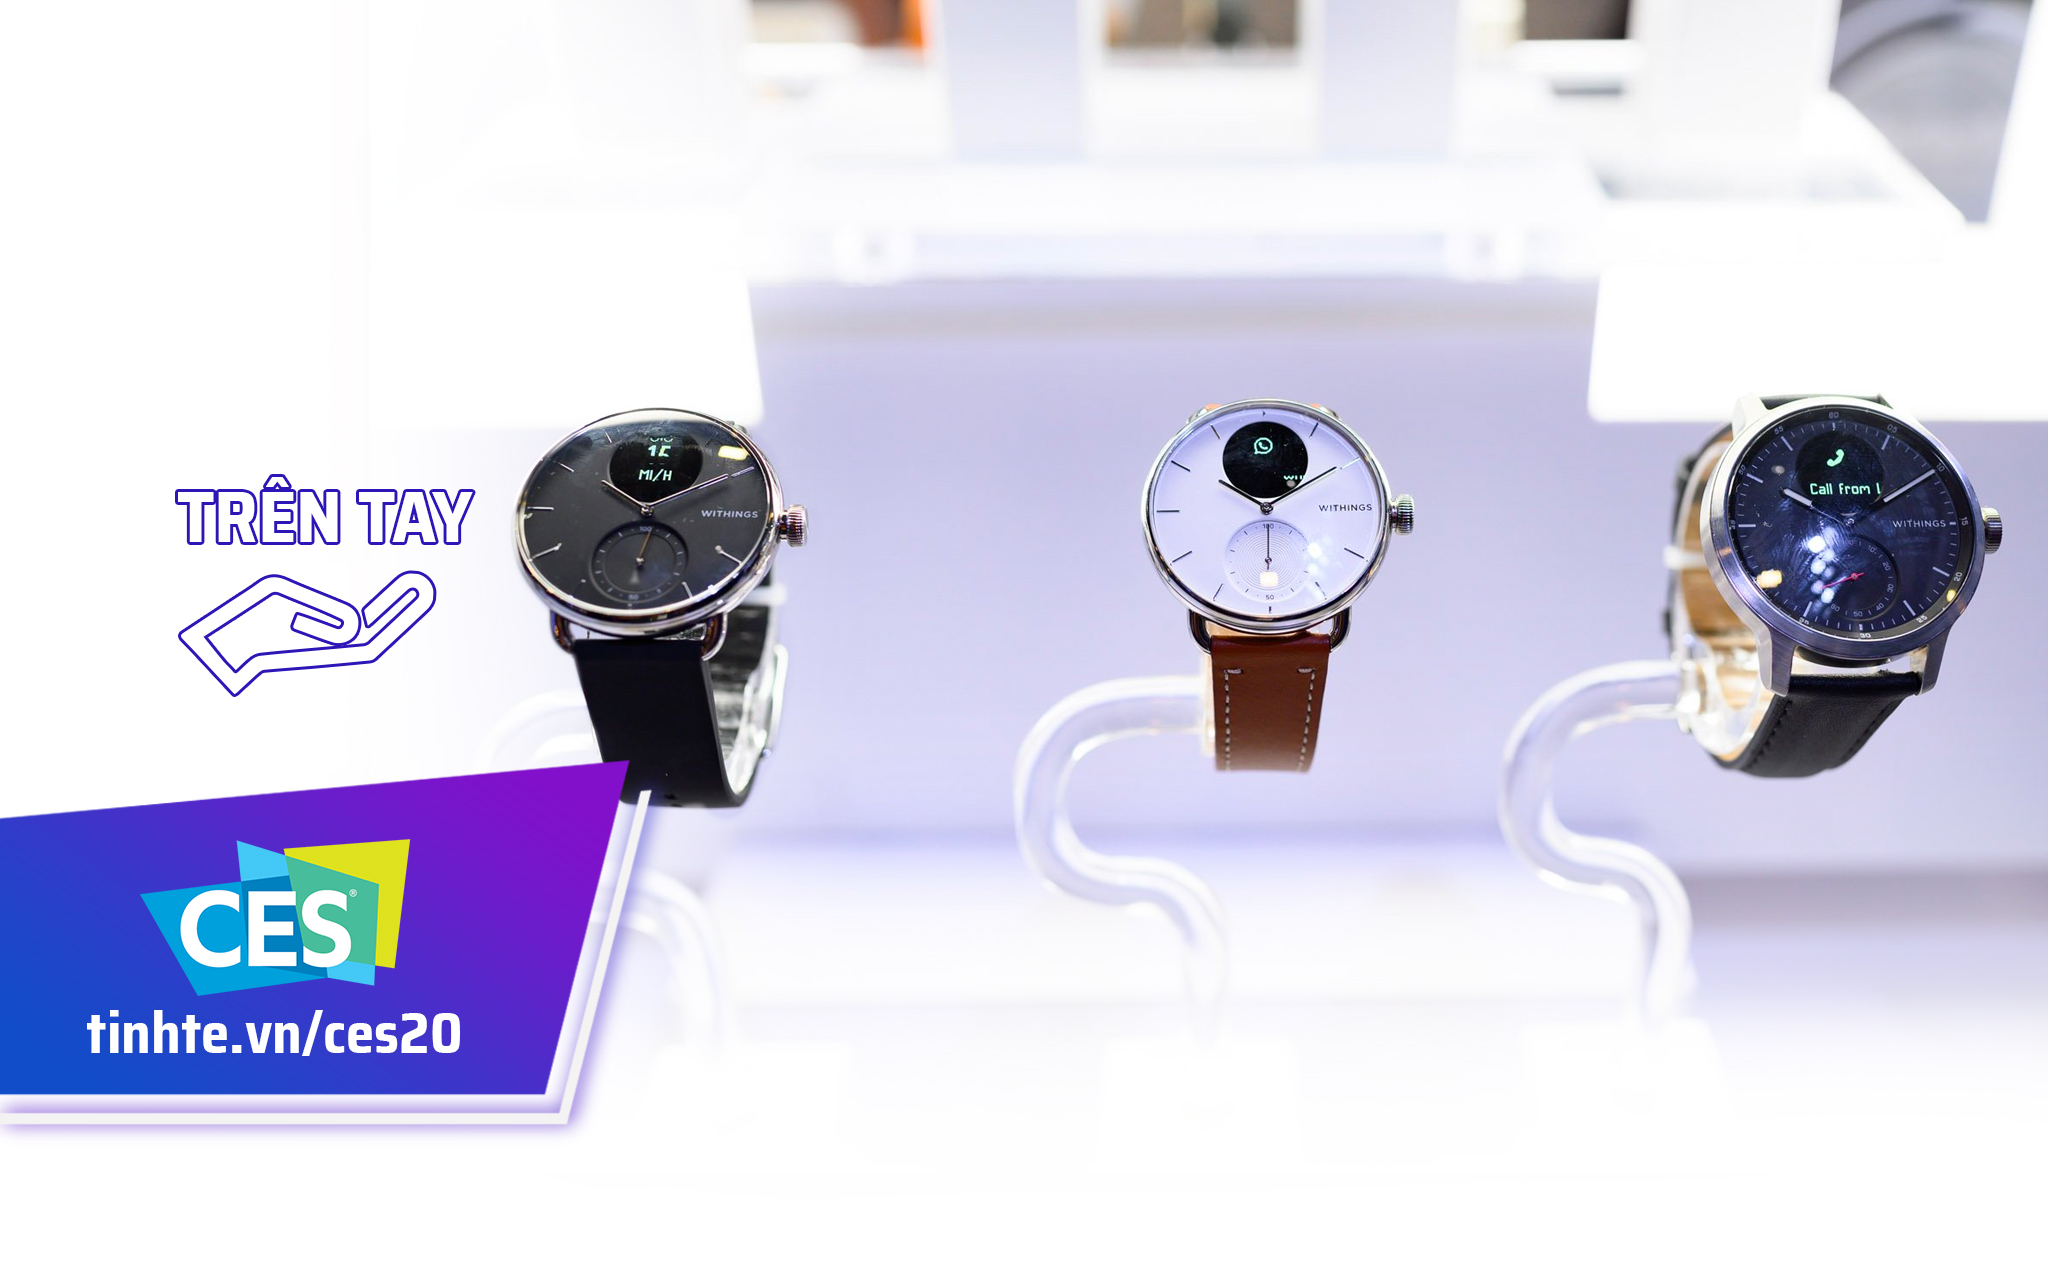 #CES20: Trên tay Withings Scanwatch, hai kích thước mặt đồng hồ, đo nhịp tim, ECG, SpO2